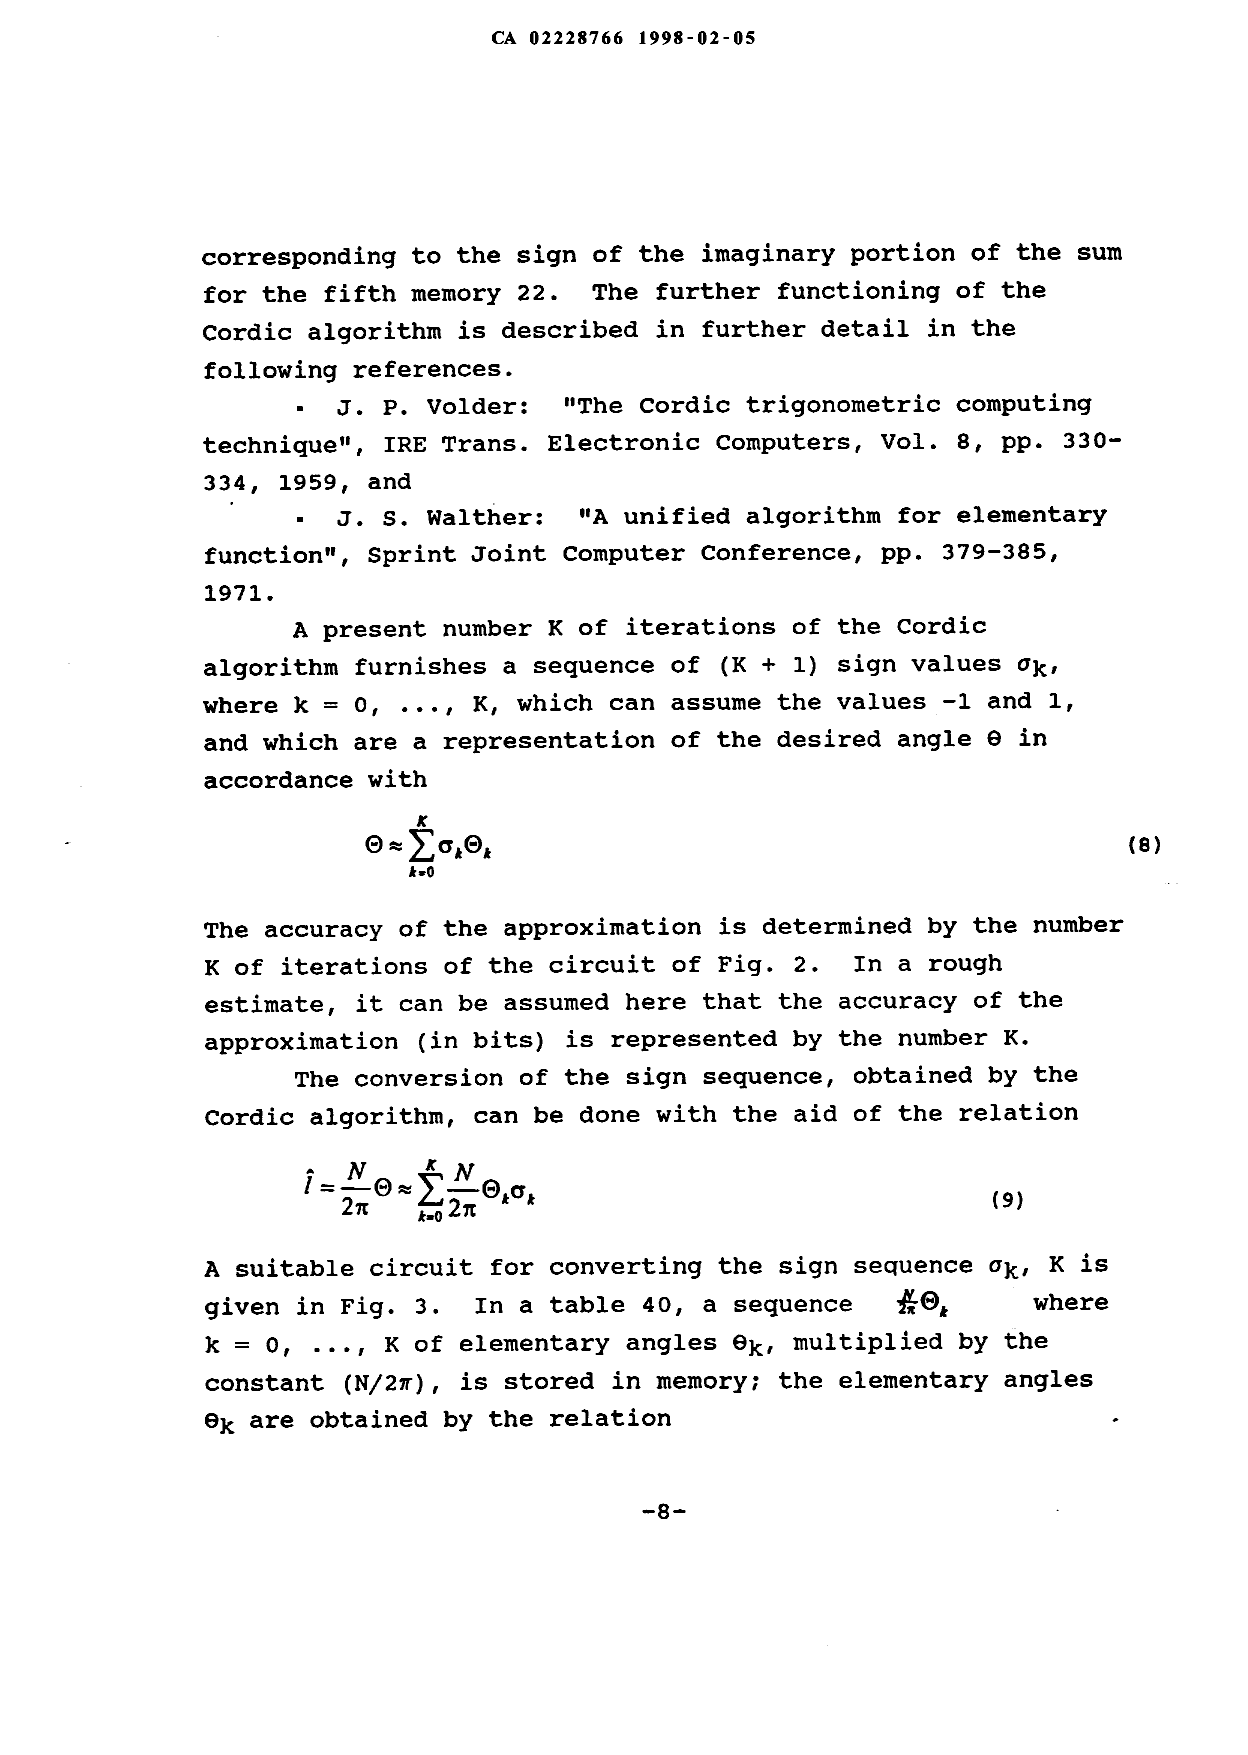 Canadian Patent Document 2228766. Description 19980205. Image 8 of 9